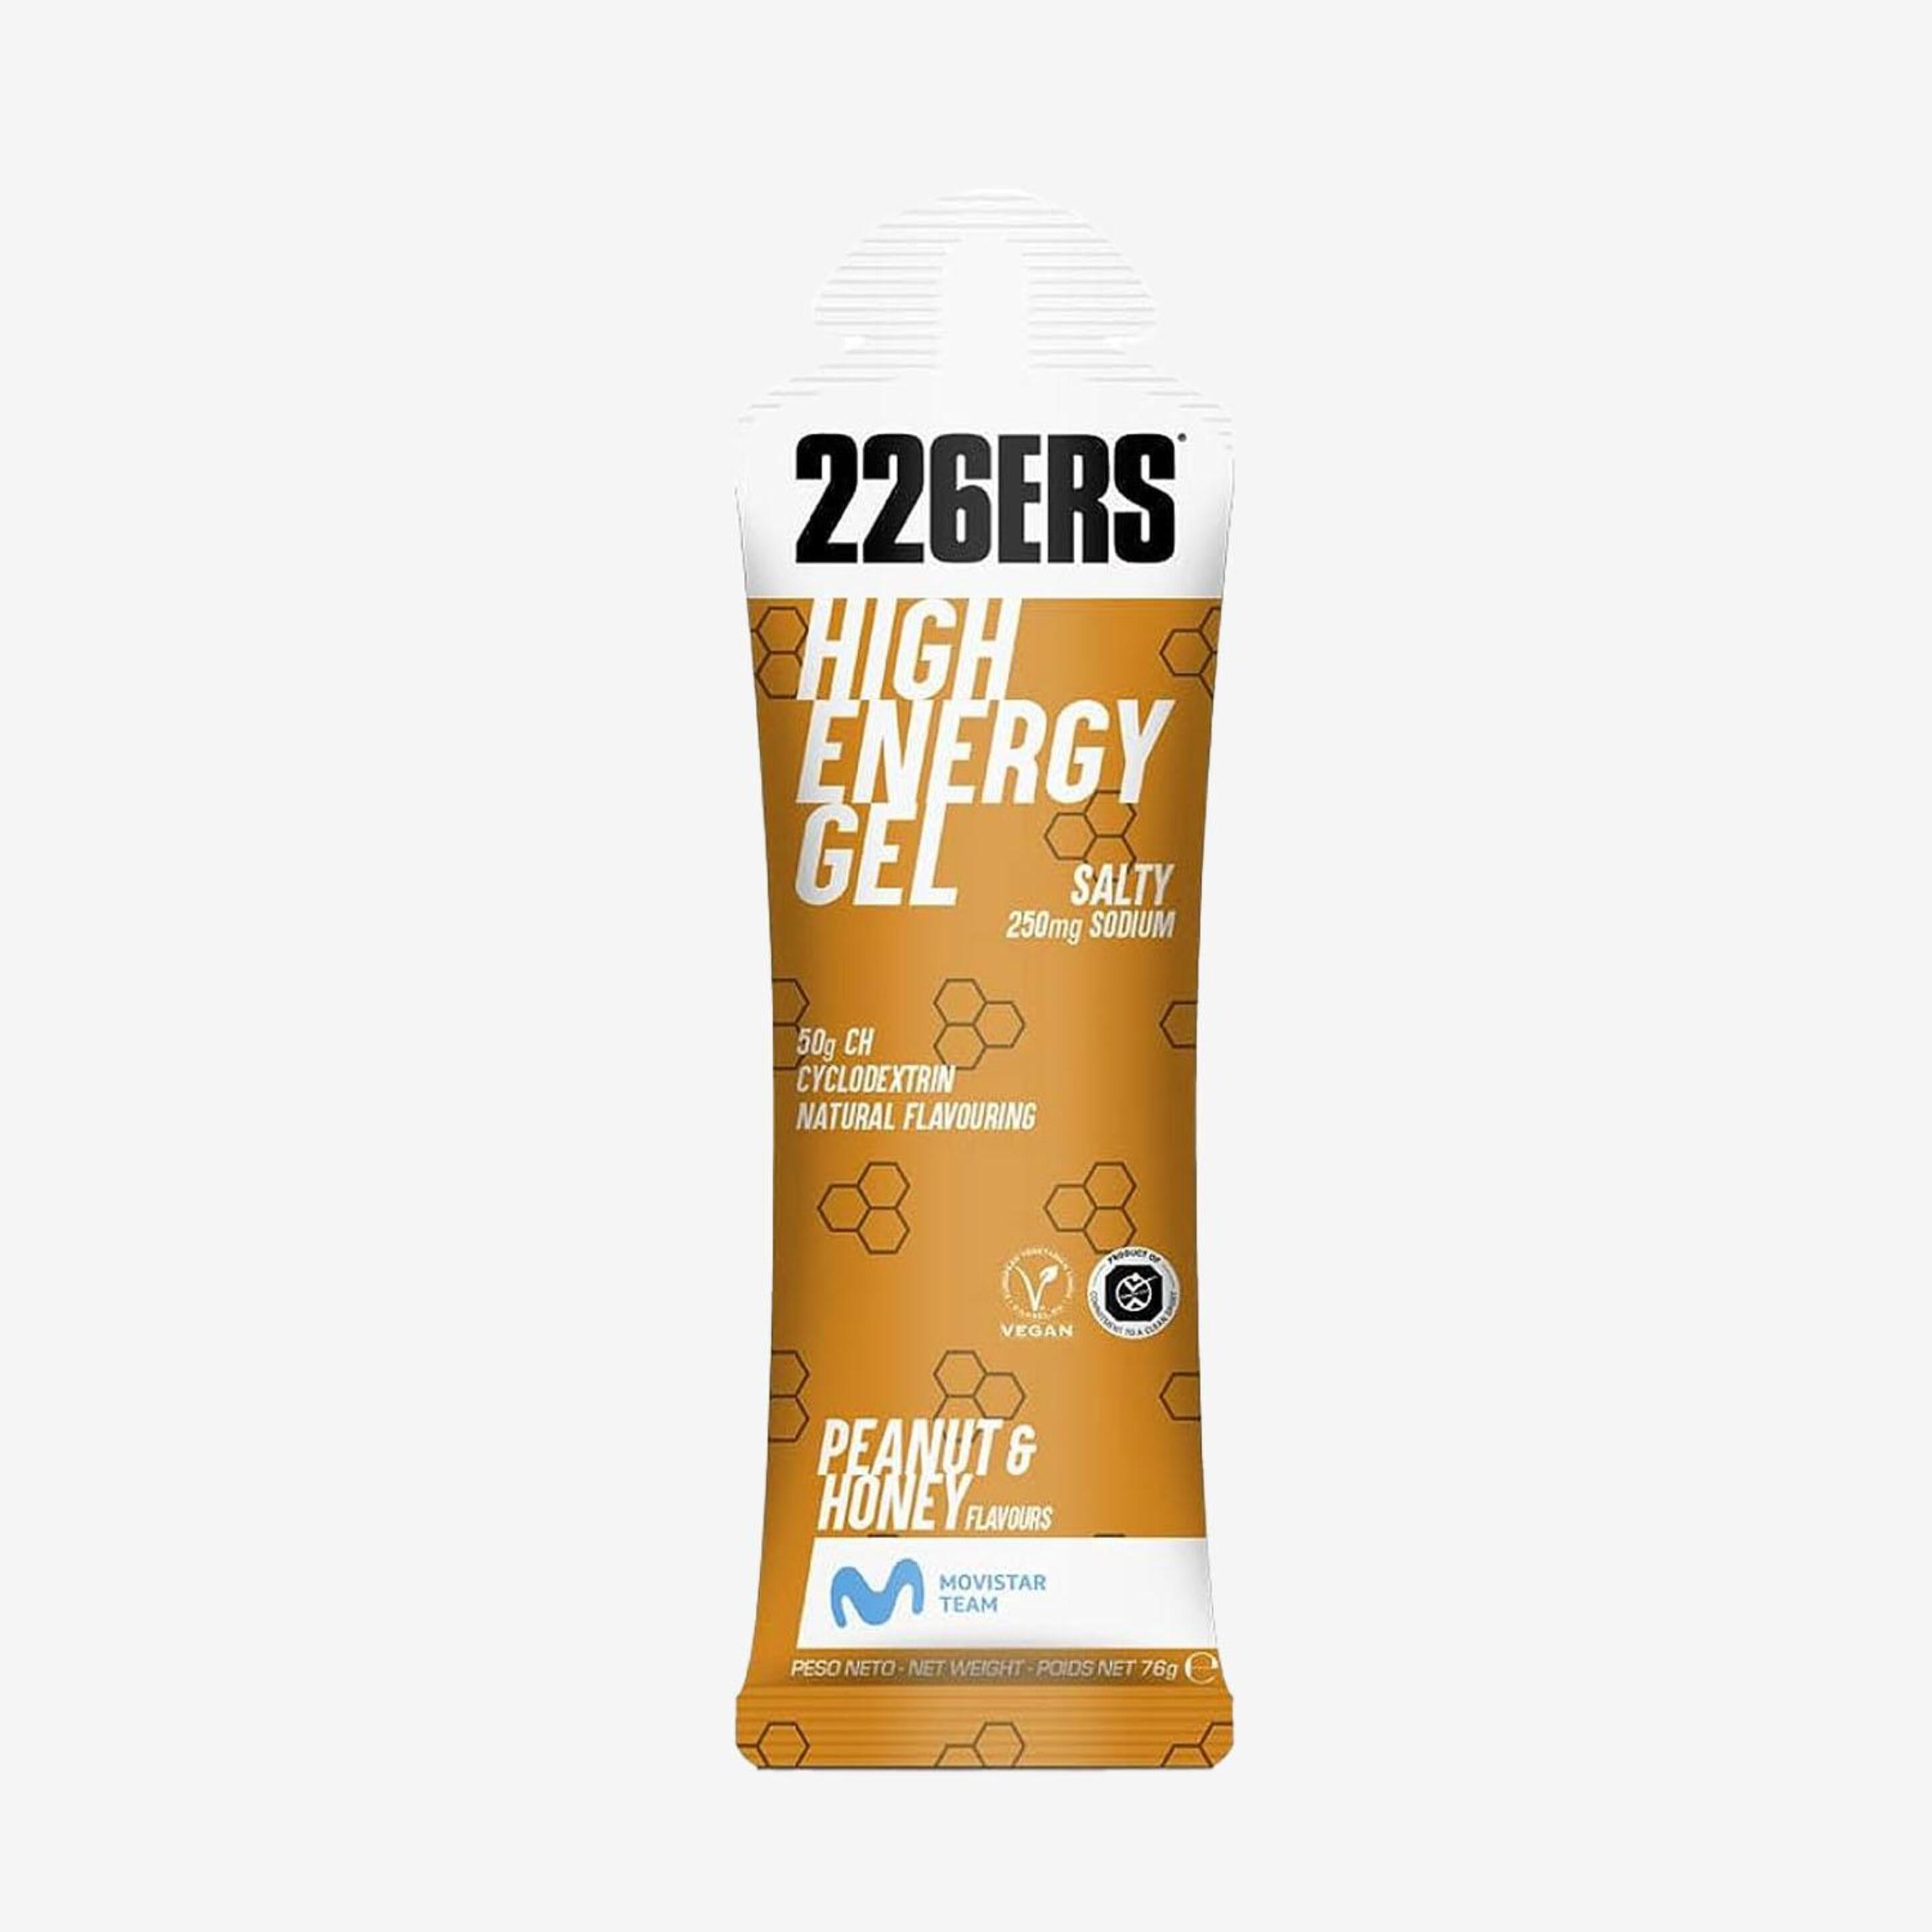 226ers High - unico - Gel Energía